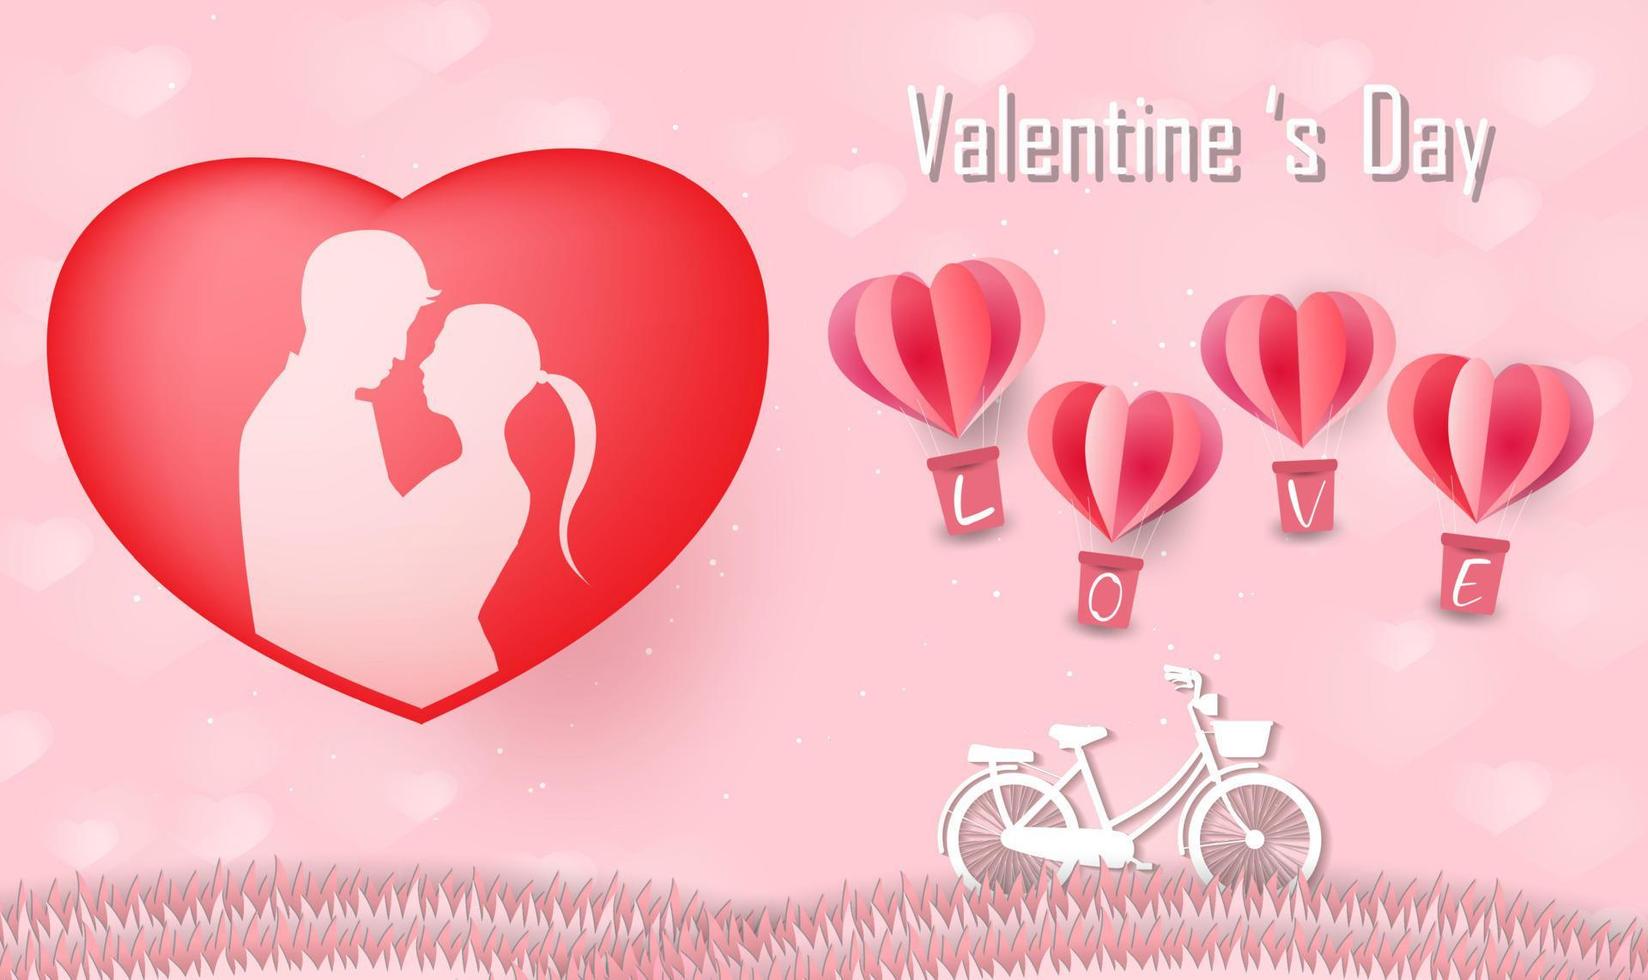 liefde en valentijnsdag, geliefden staan en een papieren hartvormige ballon die in de lucht zweeft. ambachtelijke stijl. vector